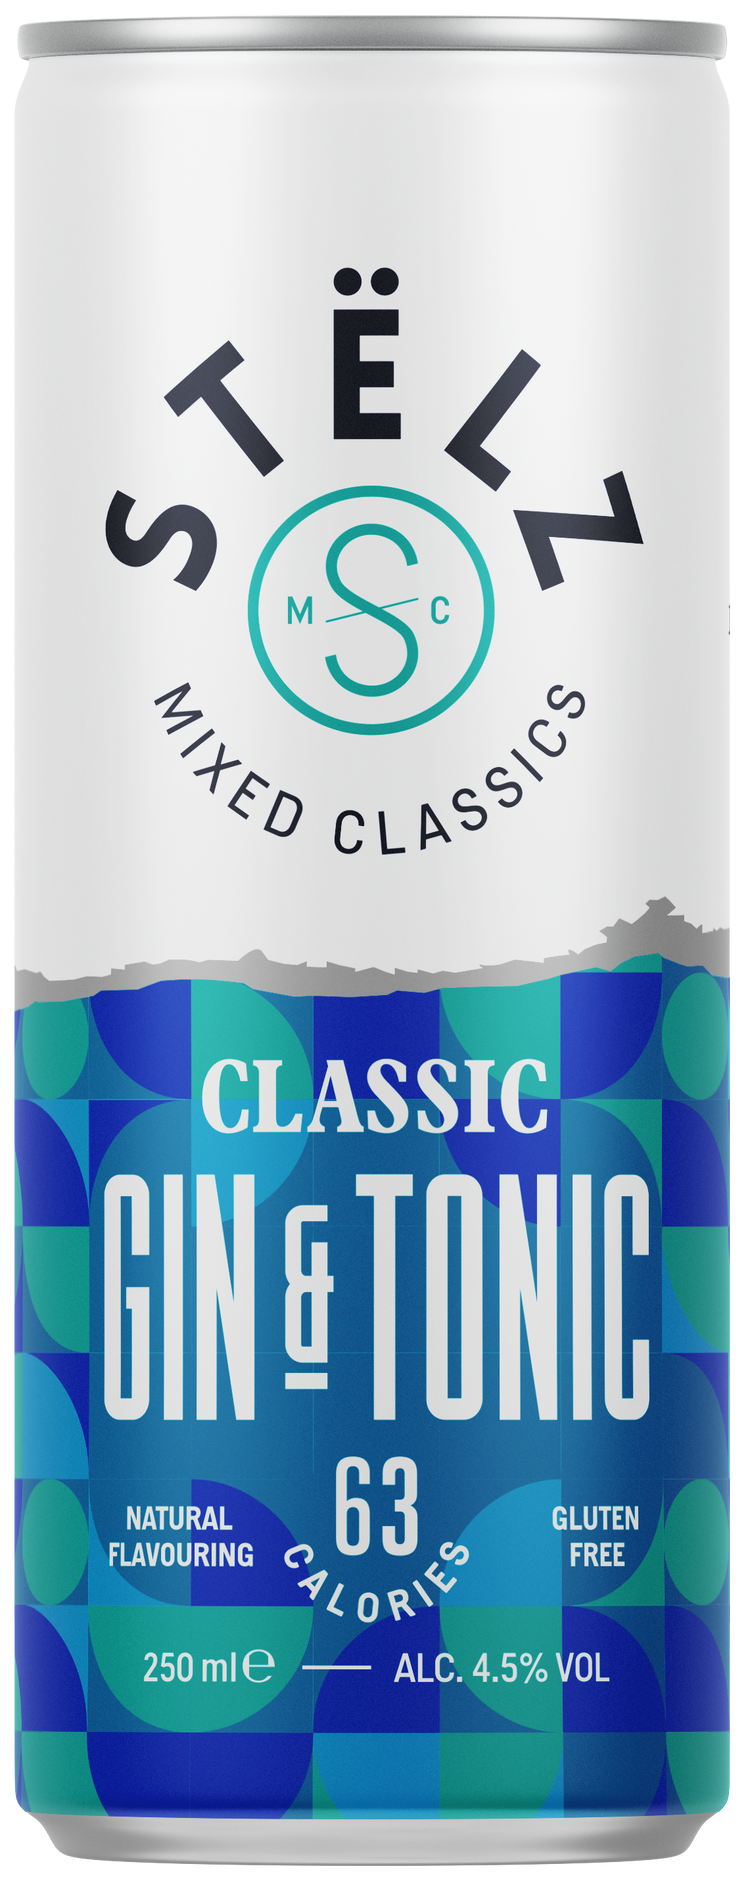 STËLZ Mixed Classics Gin & Tonic